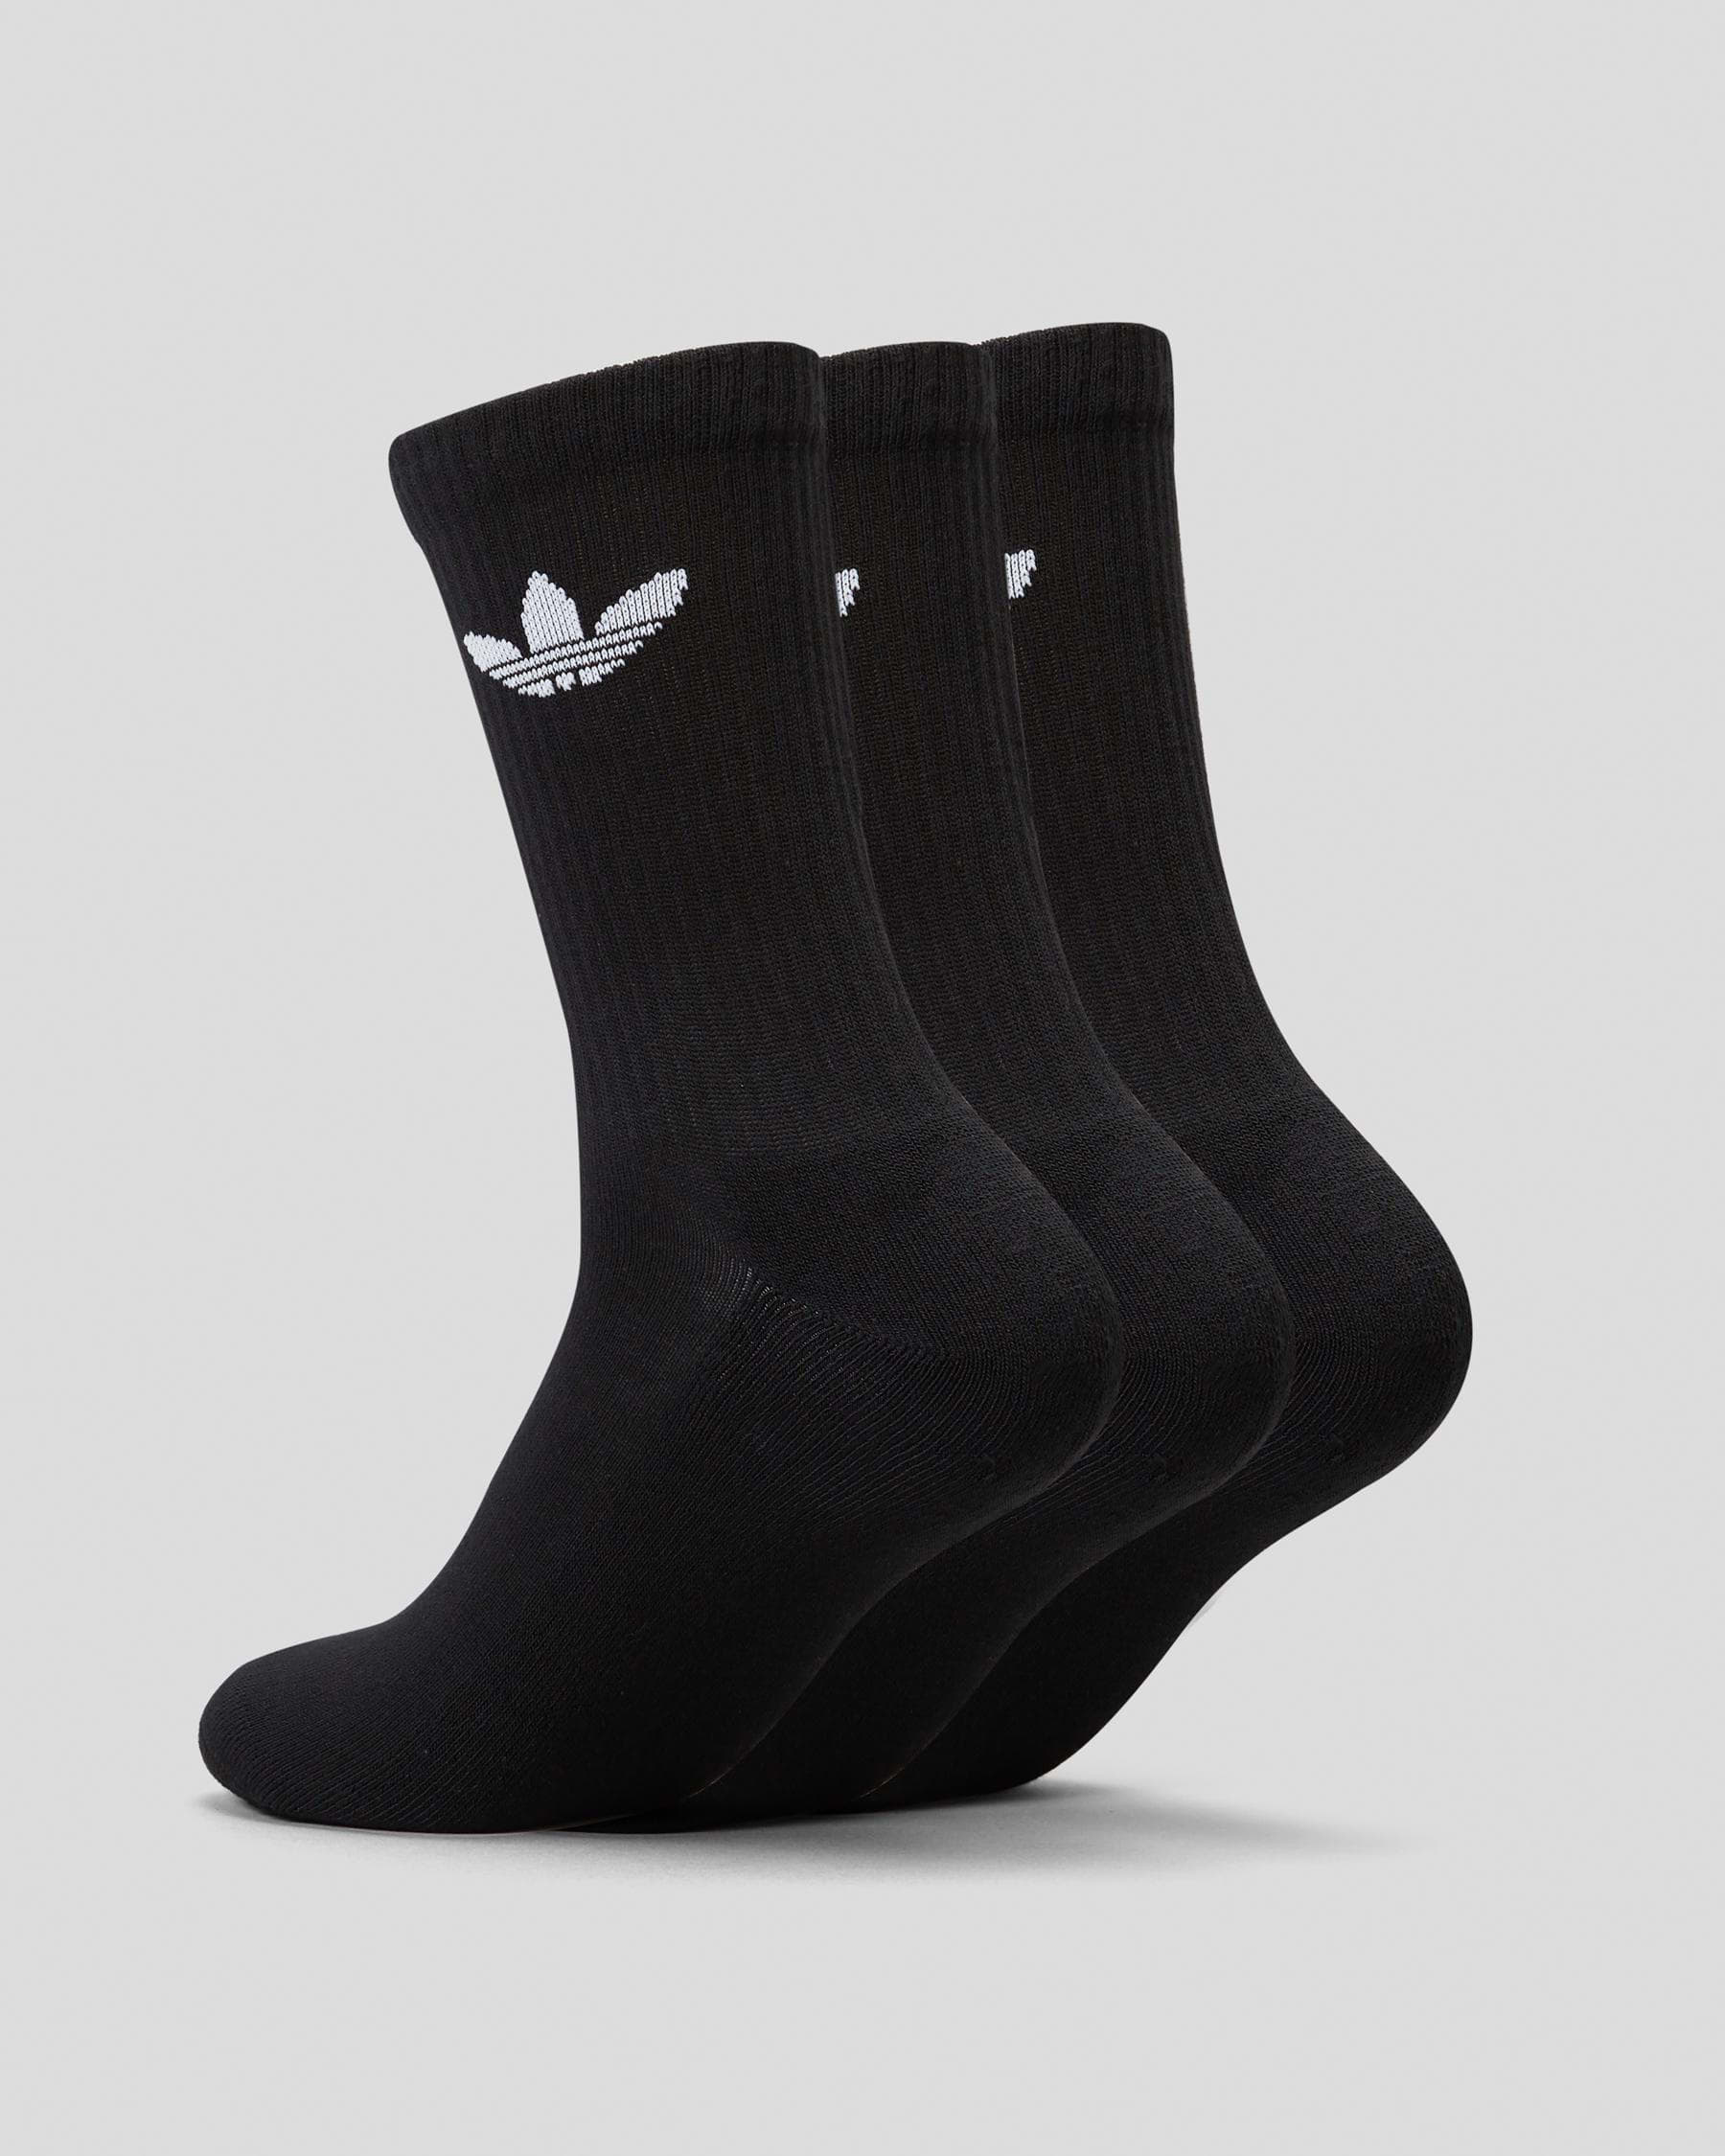 Adidas Trefoil Crew Sock 3 Pack In Black - Fast Shipping & Easy Returns ...